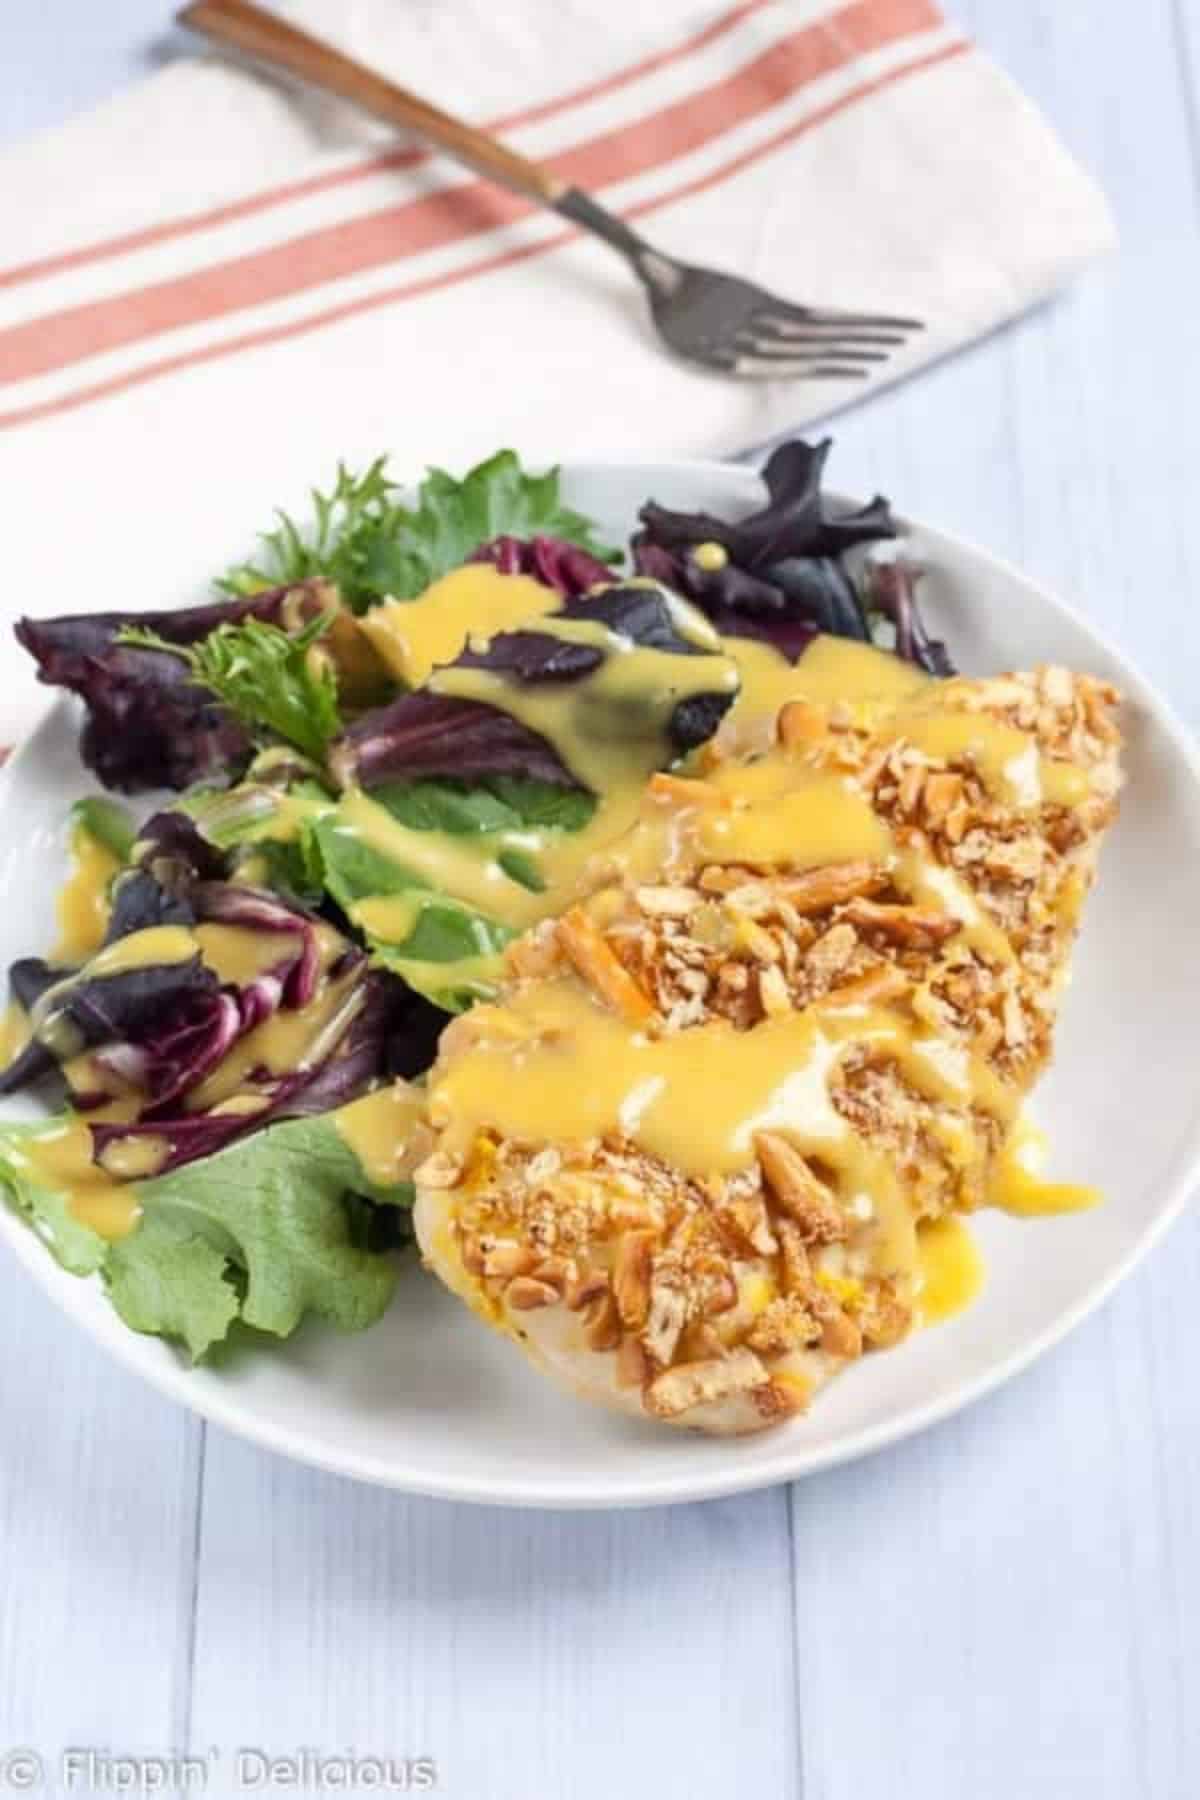 Scrumptious Gluten-Free Pretzel Chicken with Honey Mustard with veggies on a white plate.